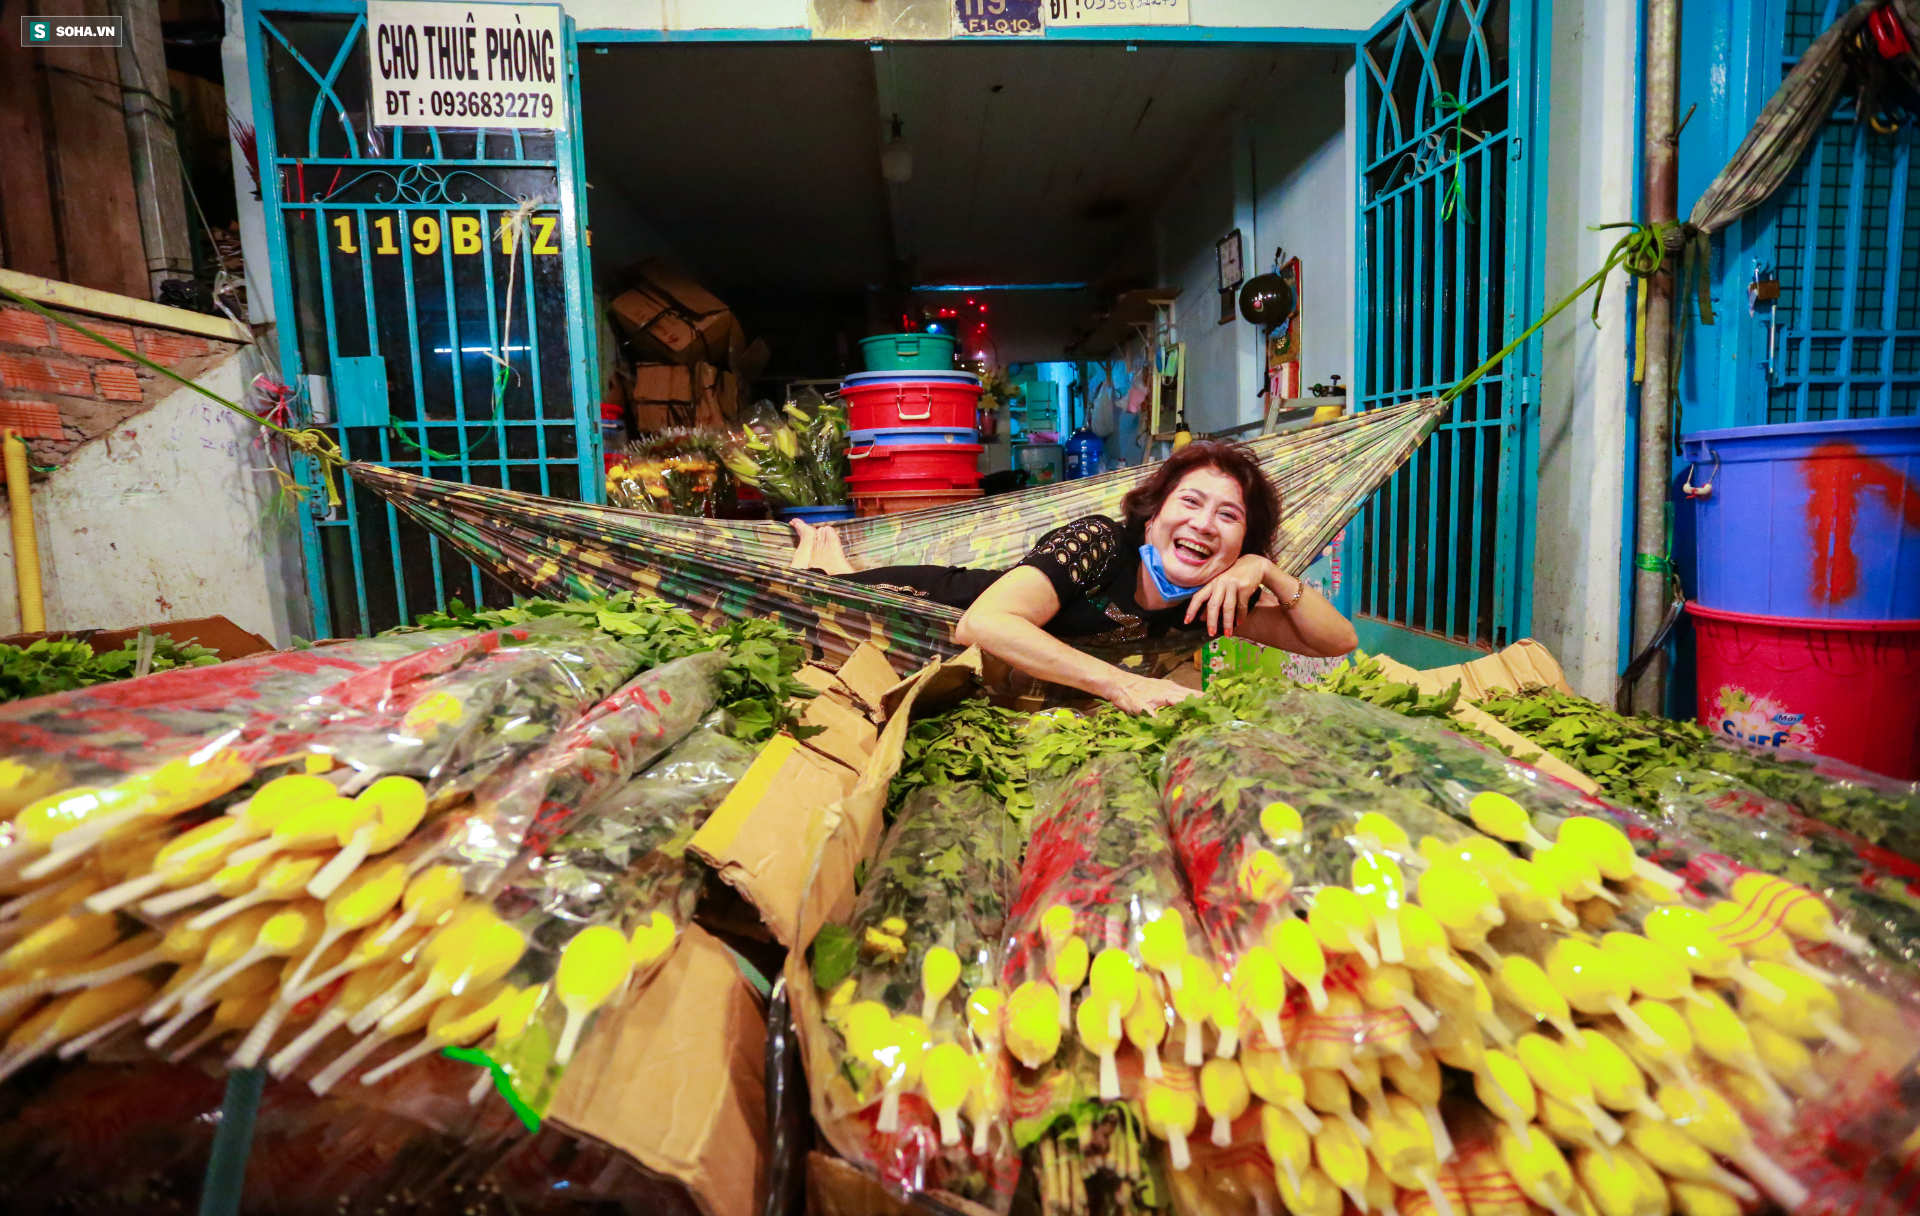 Chợ hoa 30 năm không ngủ ở Sài Gòn nhộn nhịp lúc 2 giờ sáng đón ngày 8/3 - Ảnh 6.